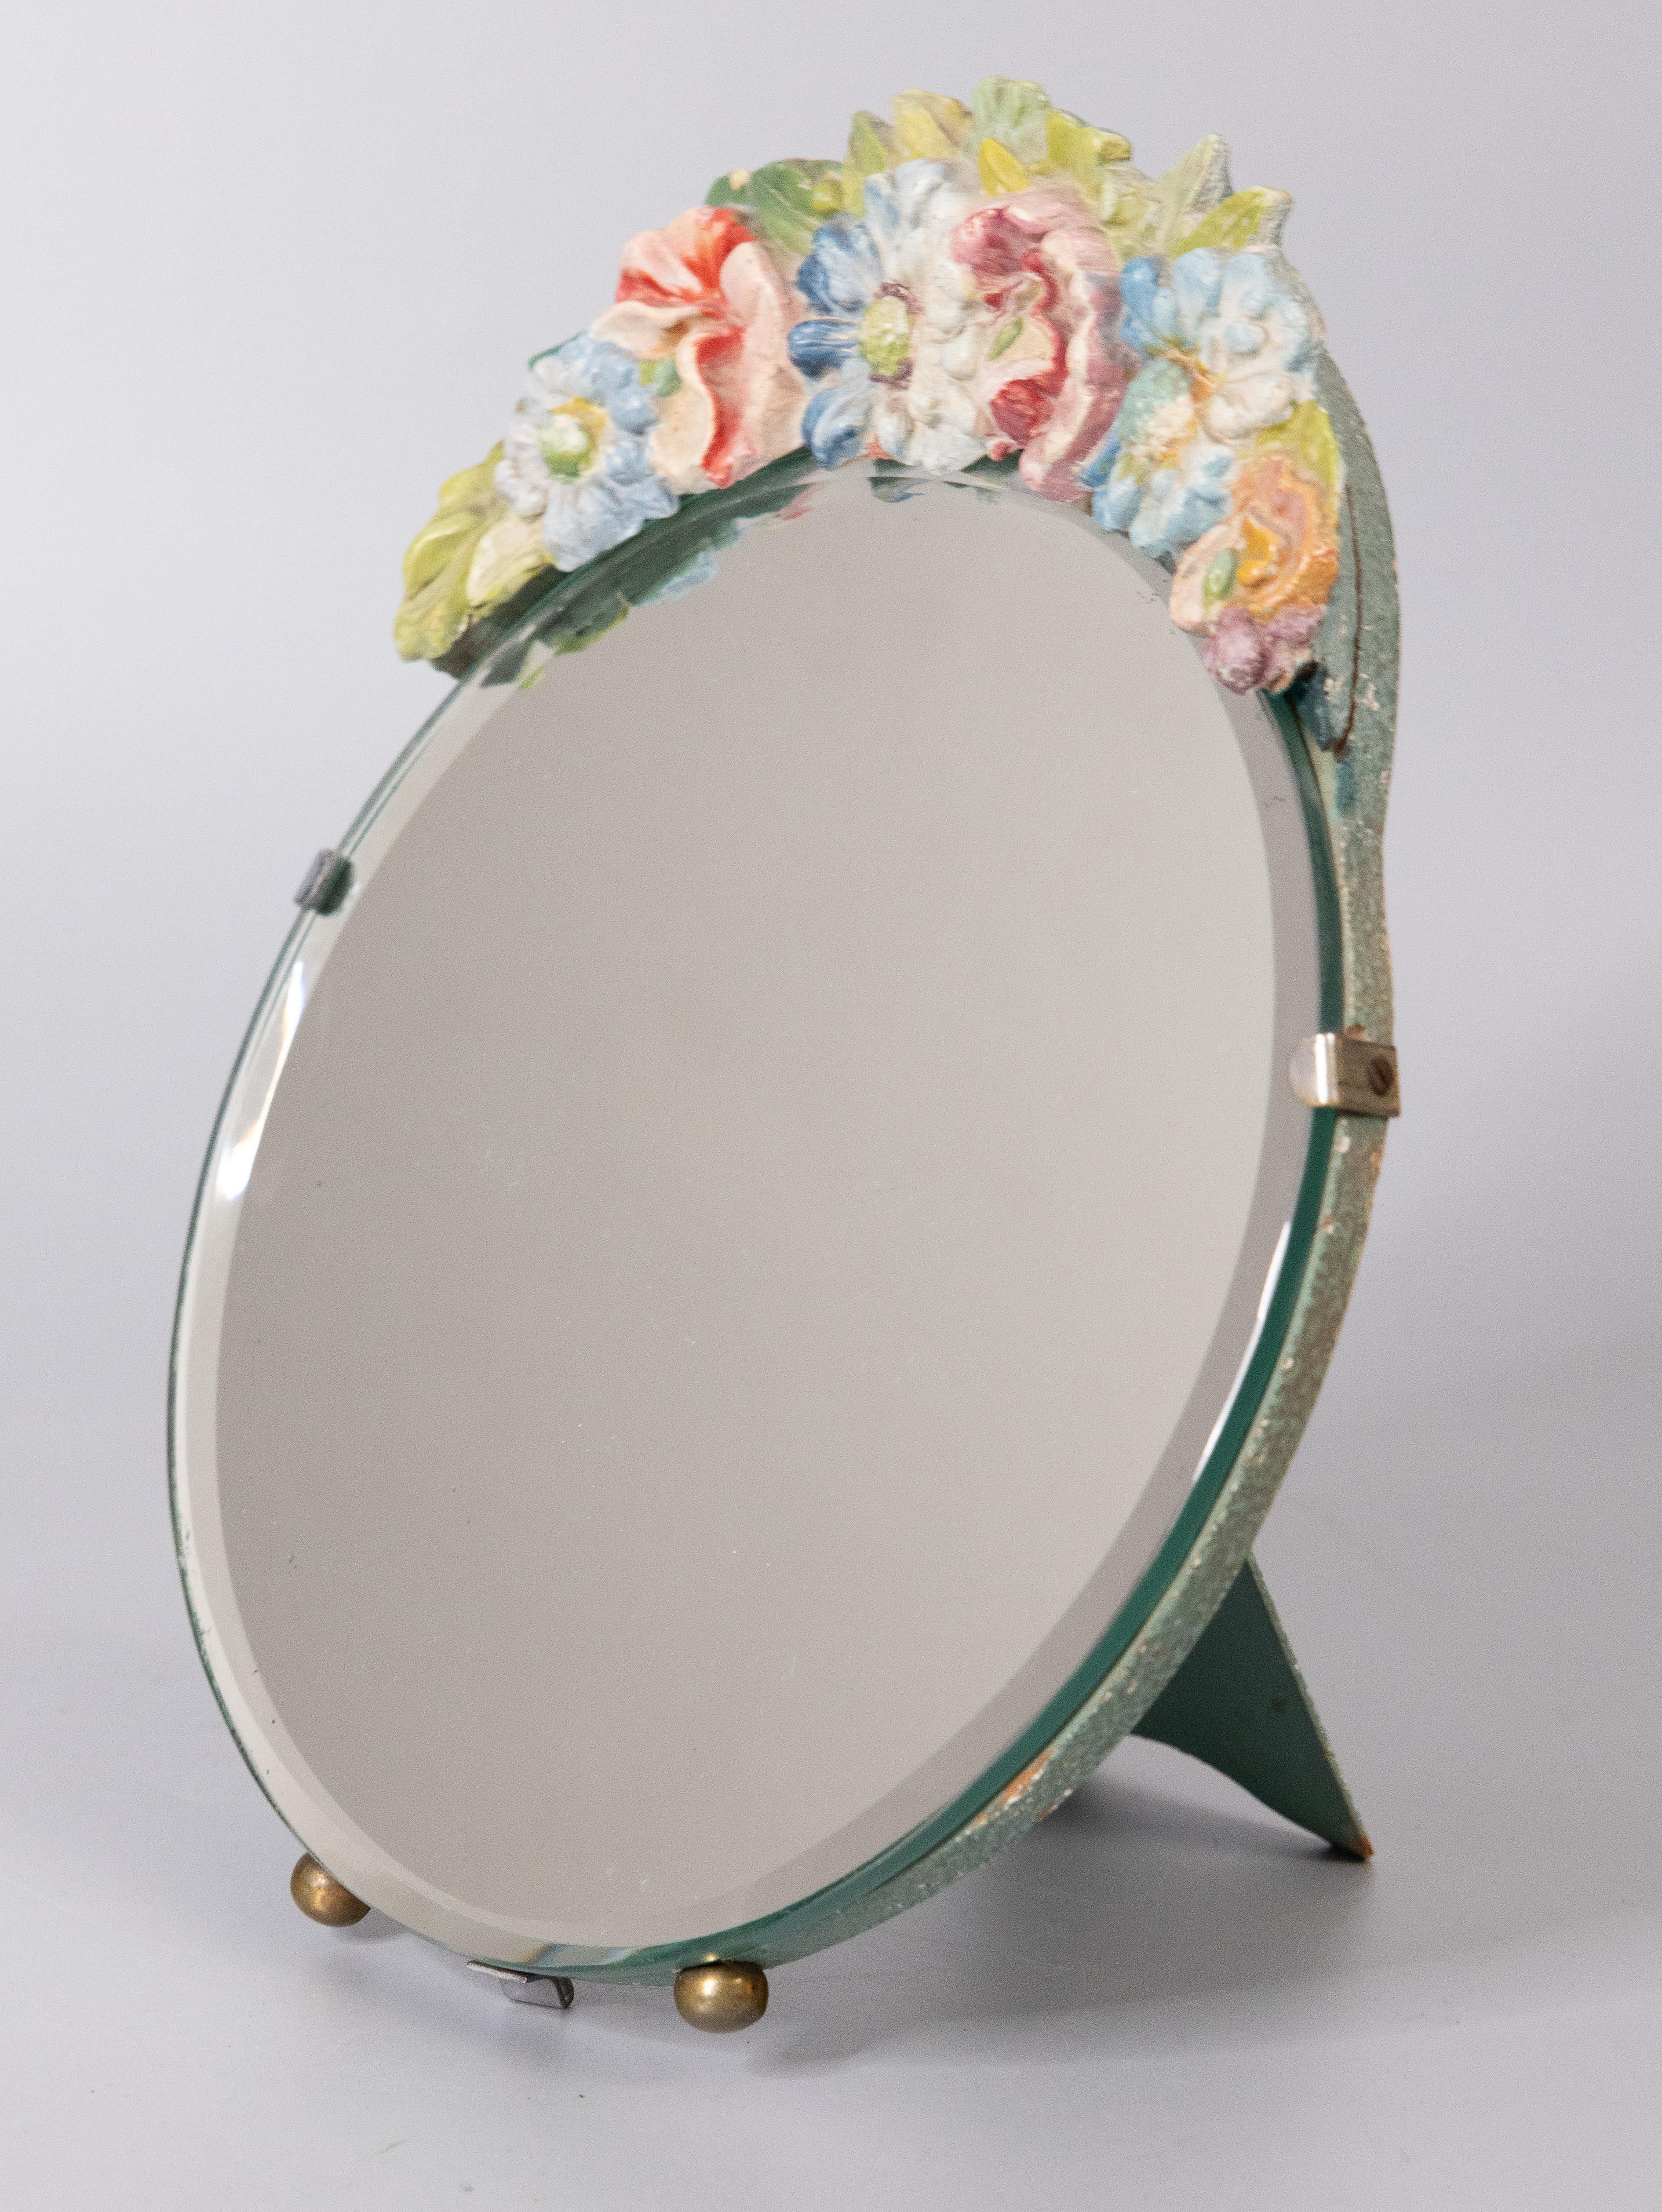 Miroir ovale avec chevalet pour coiffeuse ou coiffeuse Barbola anglaise, vers 1920. Ce beau miroir a un verre biseauté et est couronné d'une guirlande florale en gesso. Elle serait très belle exposée sur une commode, une vanité ou un petit bureau.